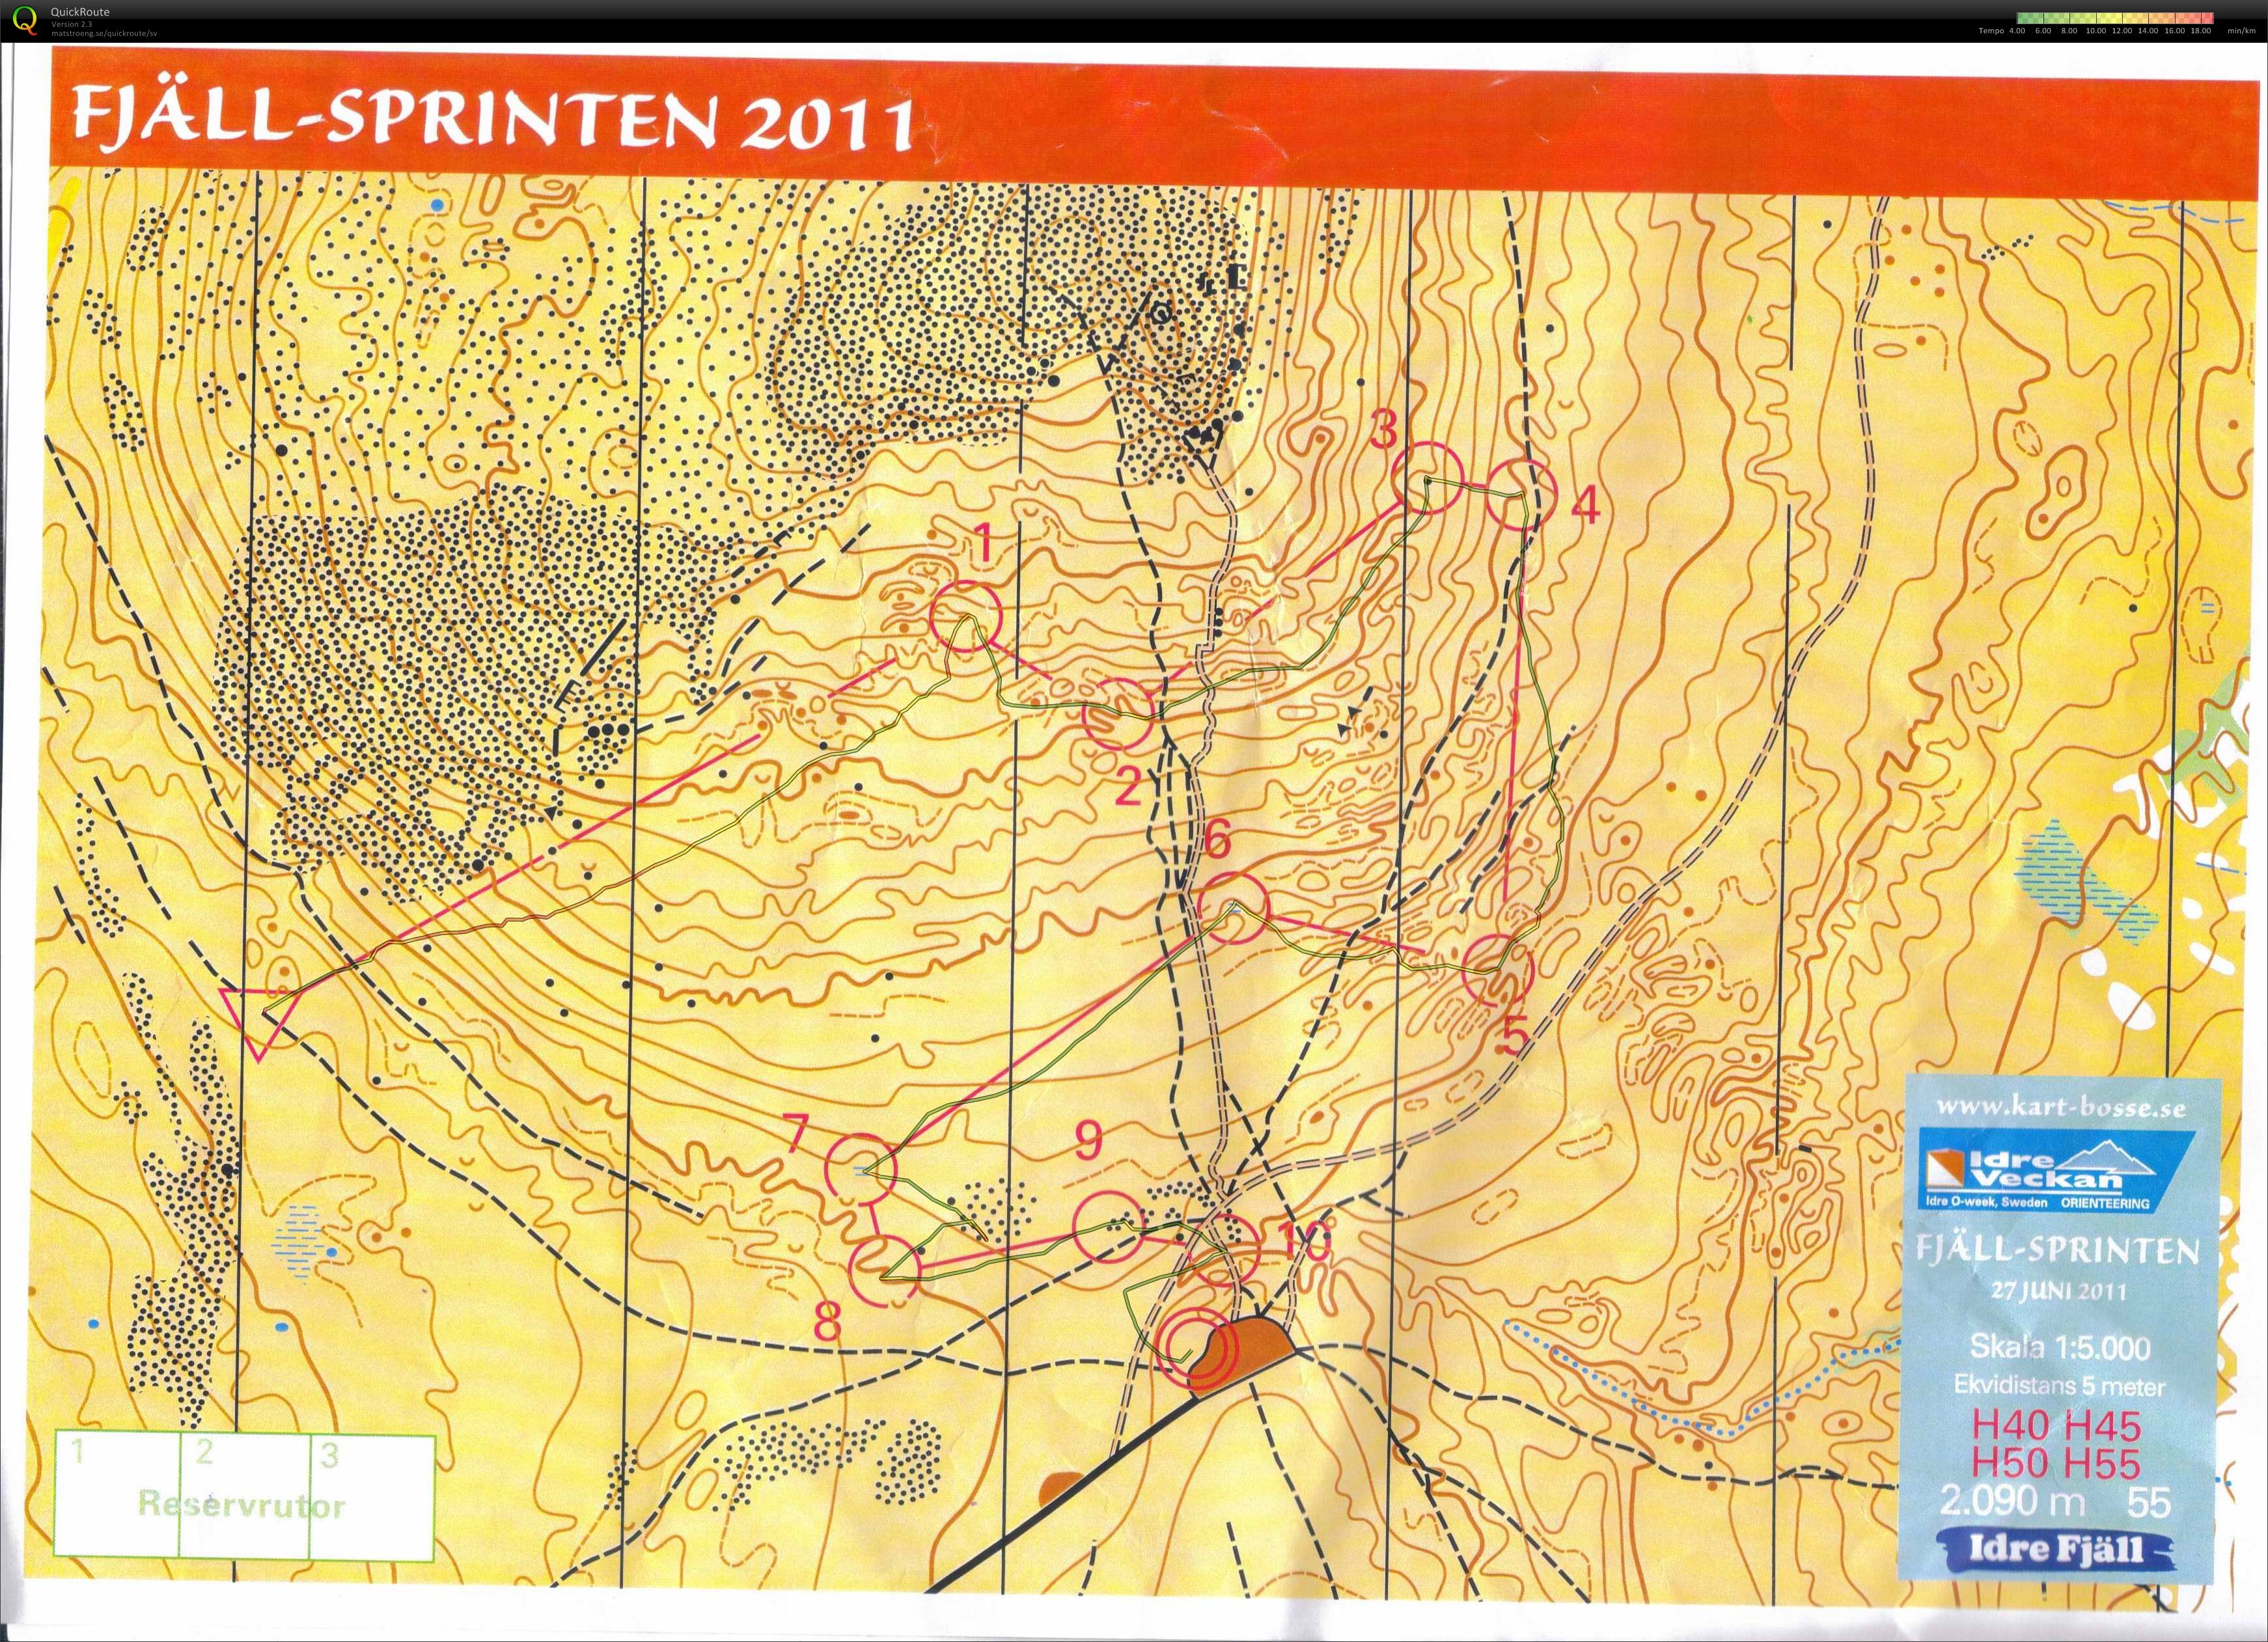 Idre fjällsprint (27/06/2011)